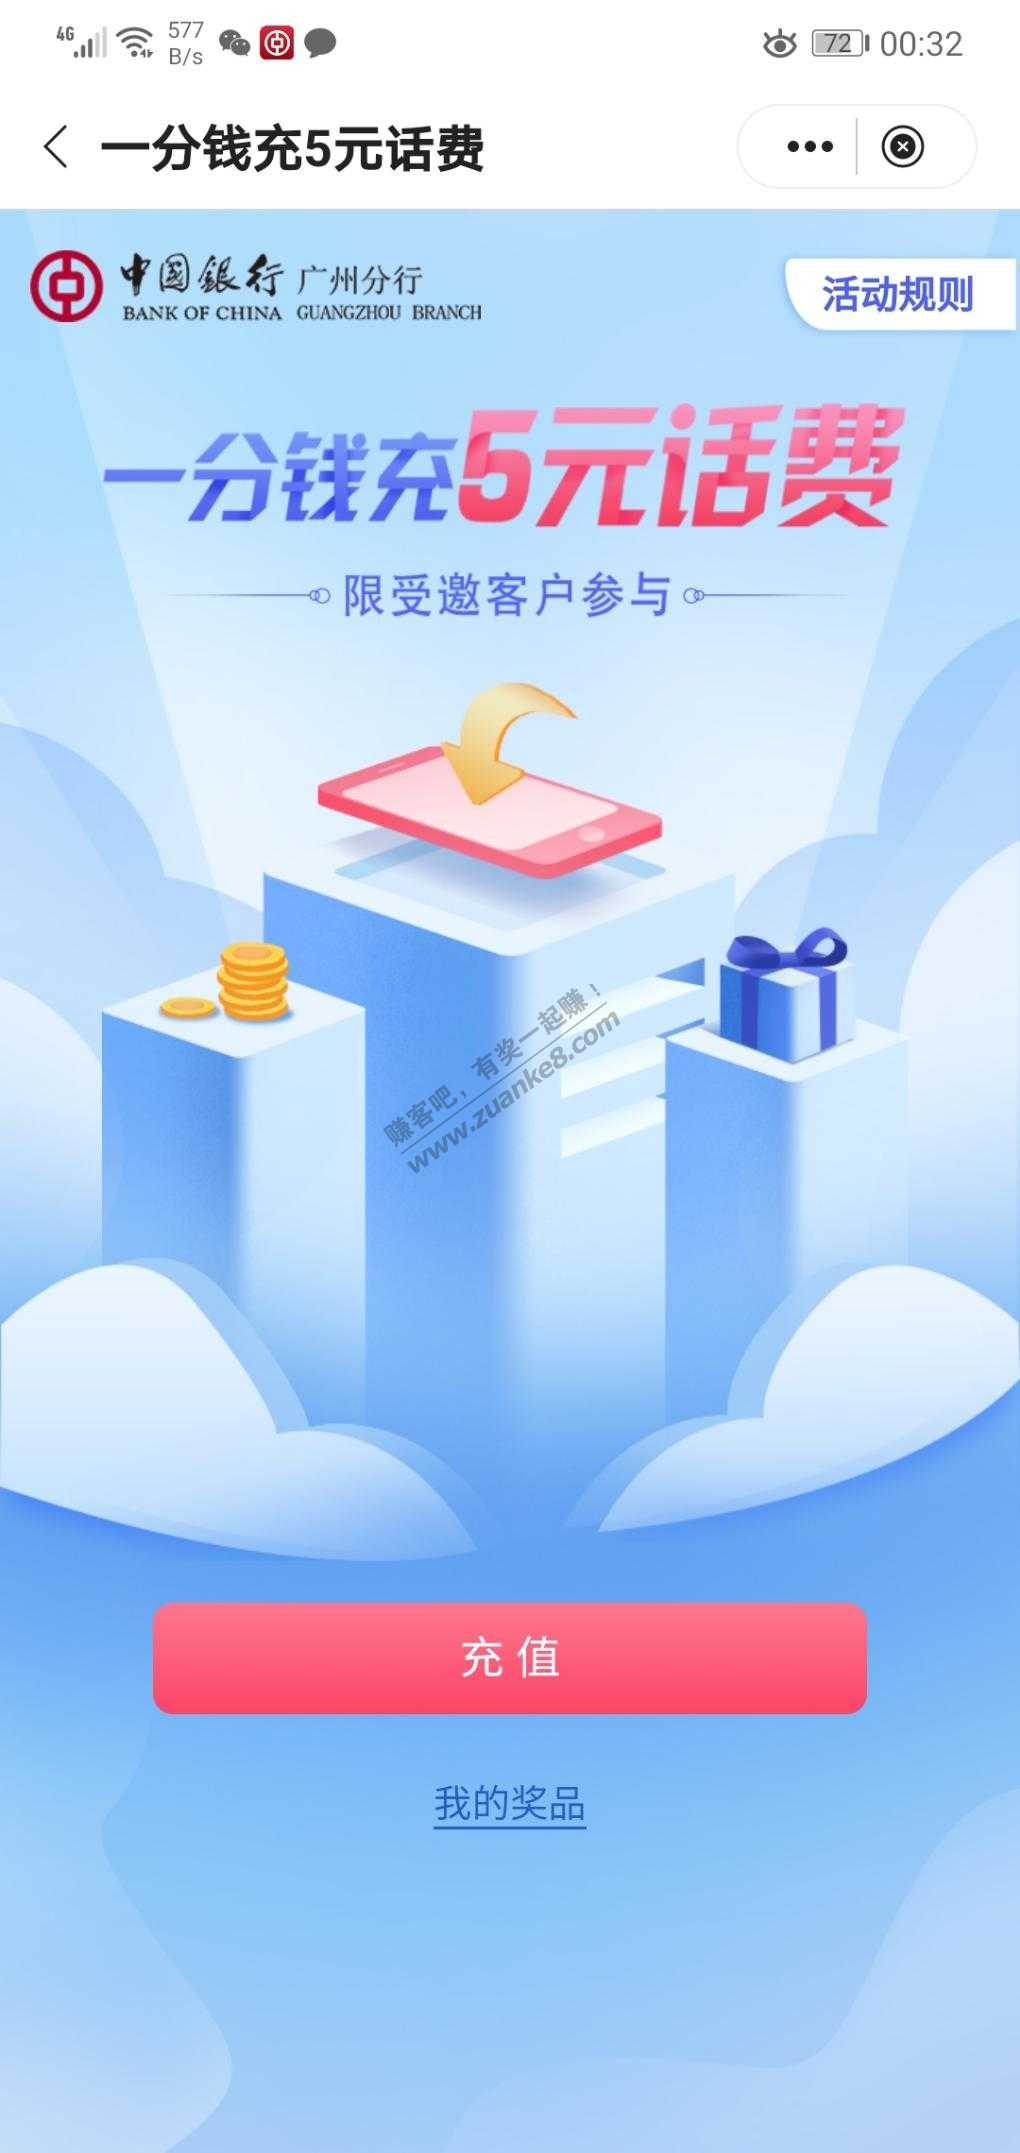 中国银行  广东省  5元话费  银豆也可以换5话费-惠小助(52huixz.com)